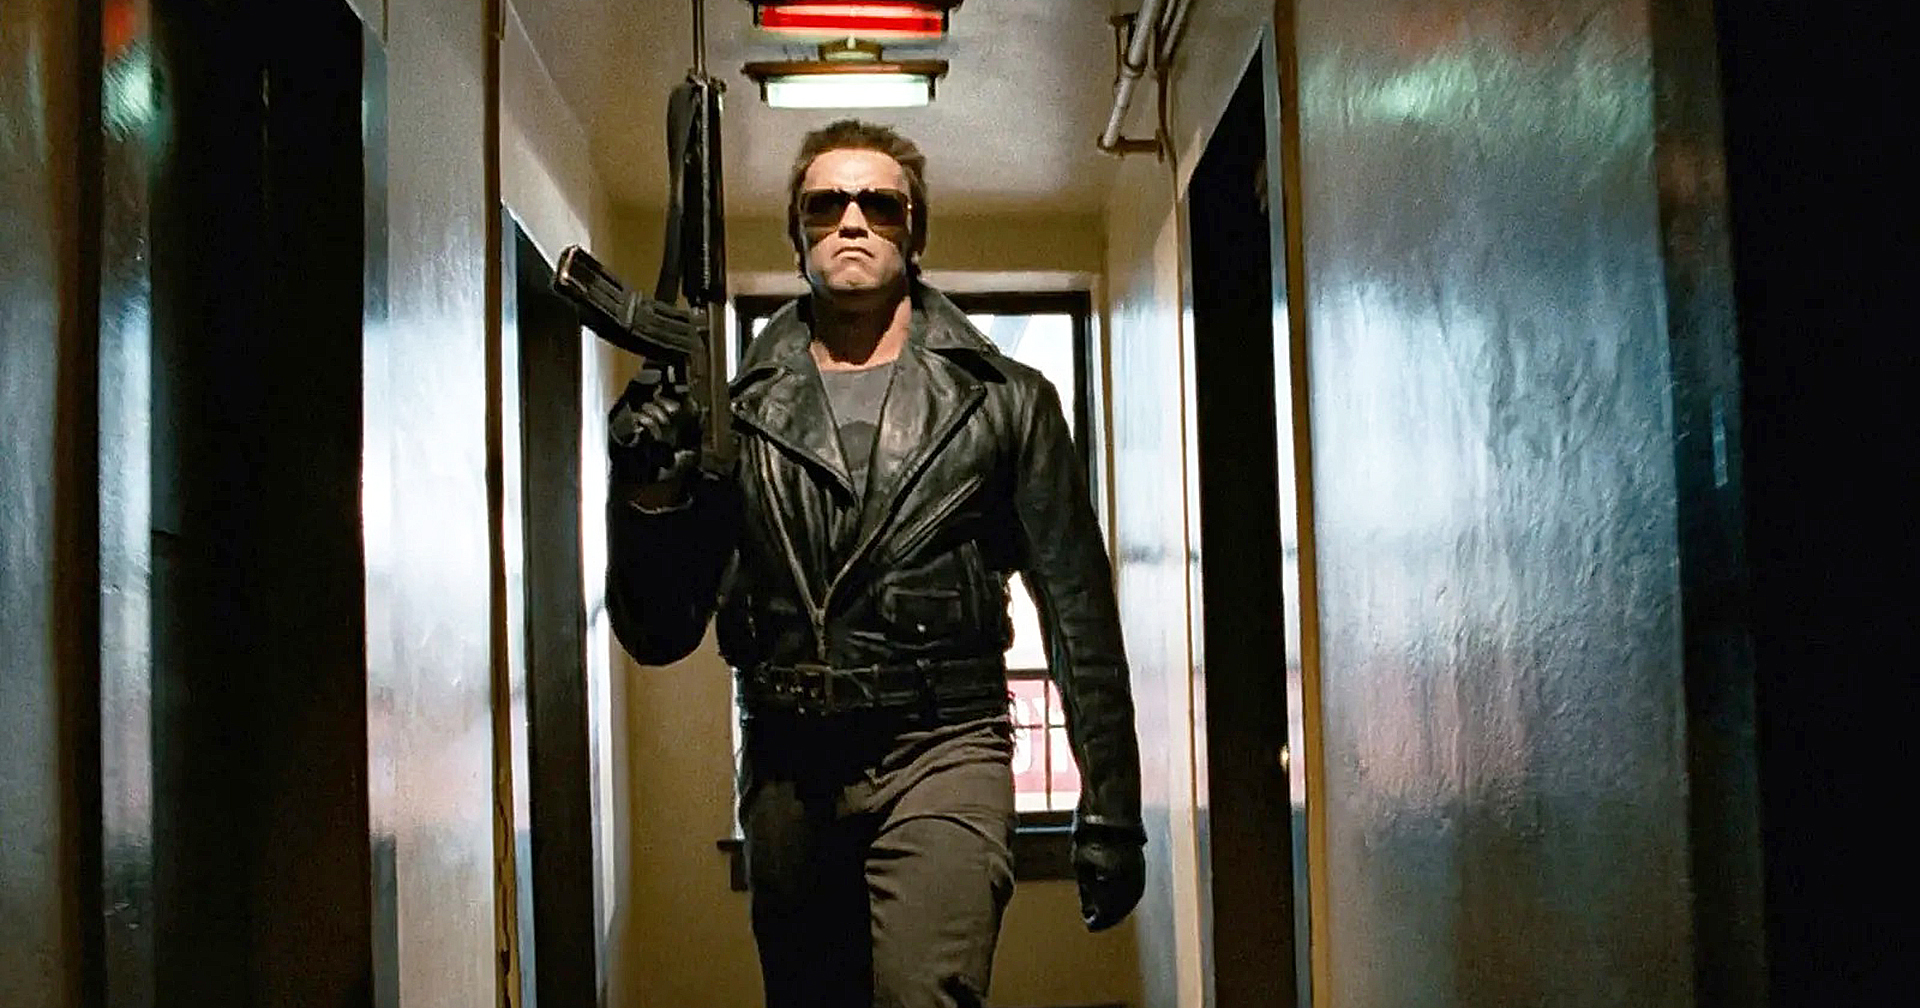 James Cameron เผย จะไม่กำกับหนังอย่าง ‘The Terminator’ แน่ ถ้าอยู่ในยุคนี้